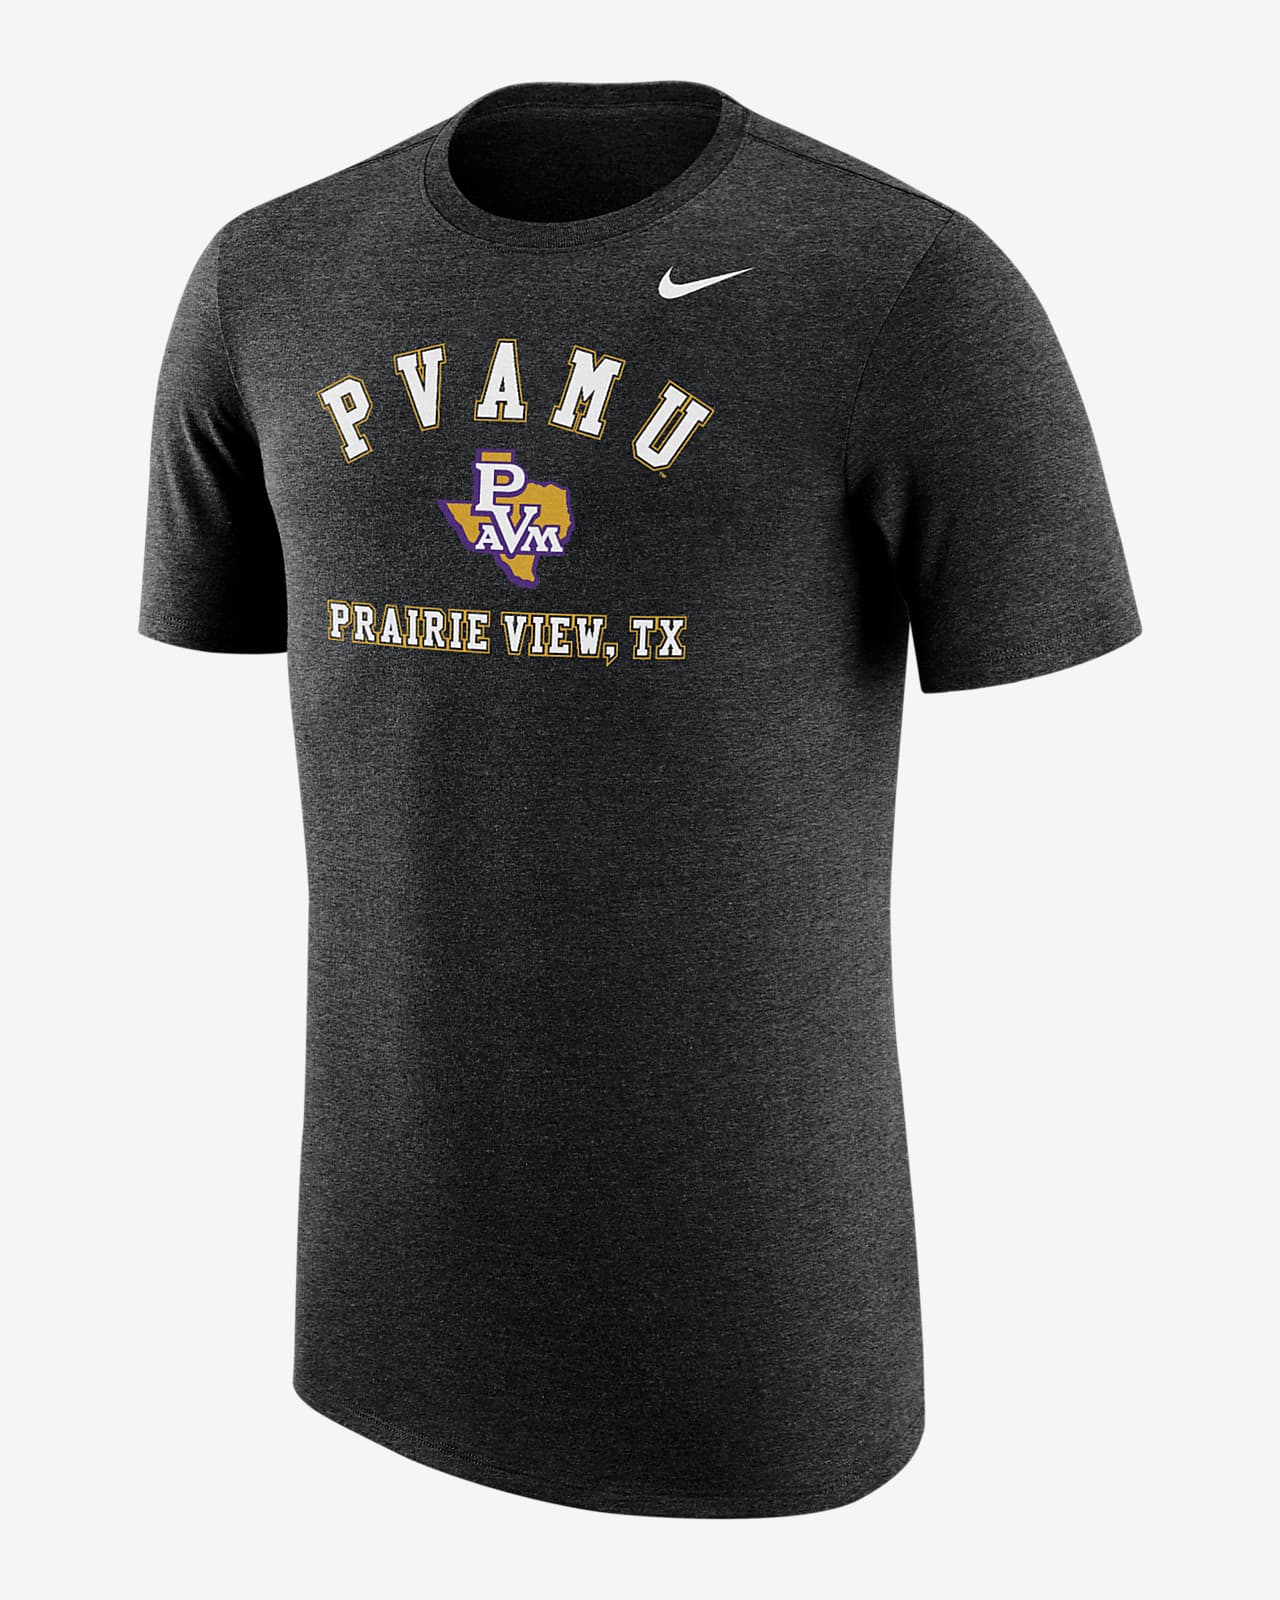 Prairie View A&M Men's Nike College T-Shirt